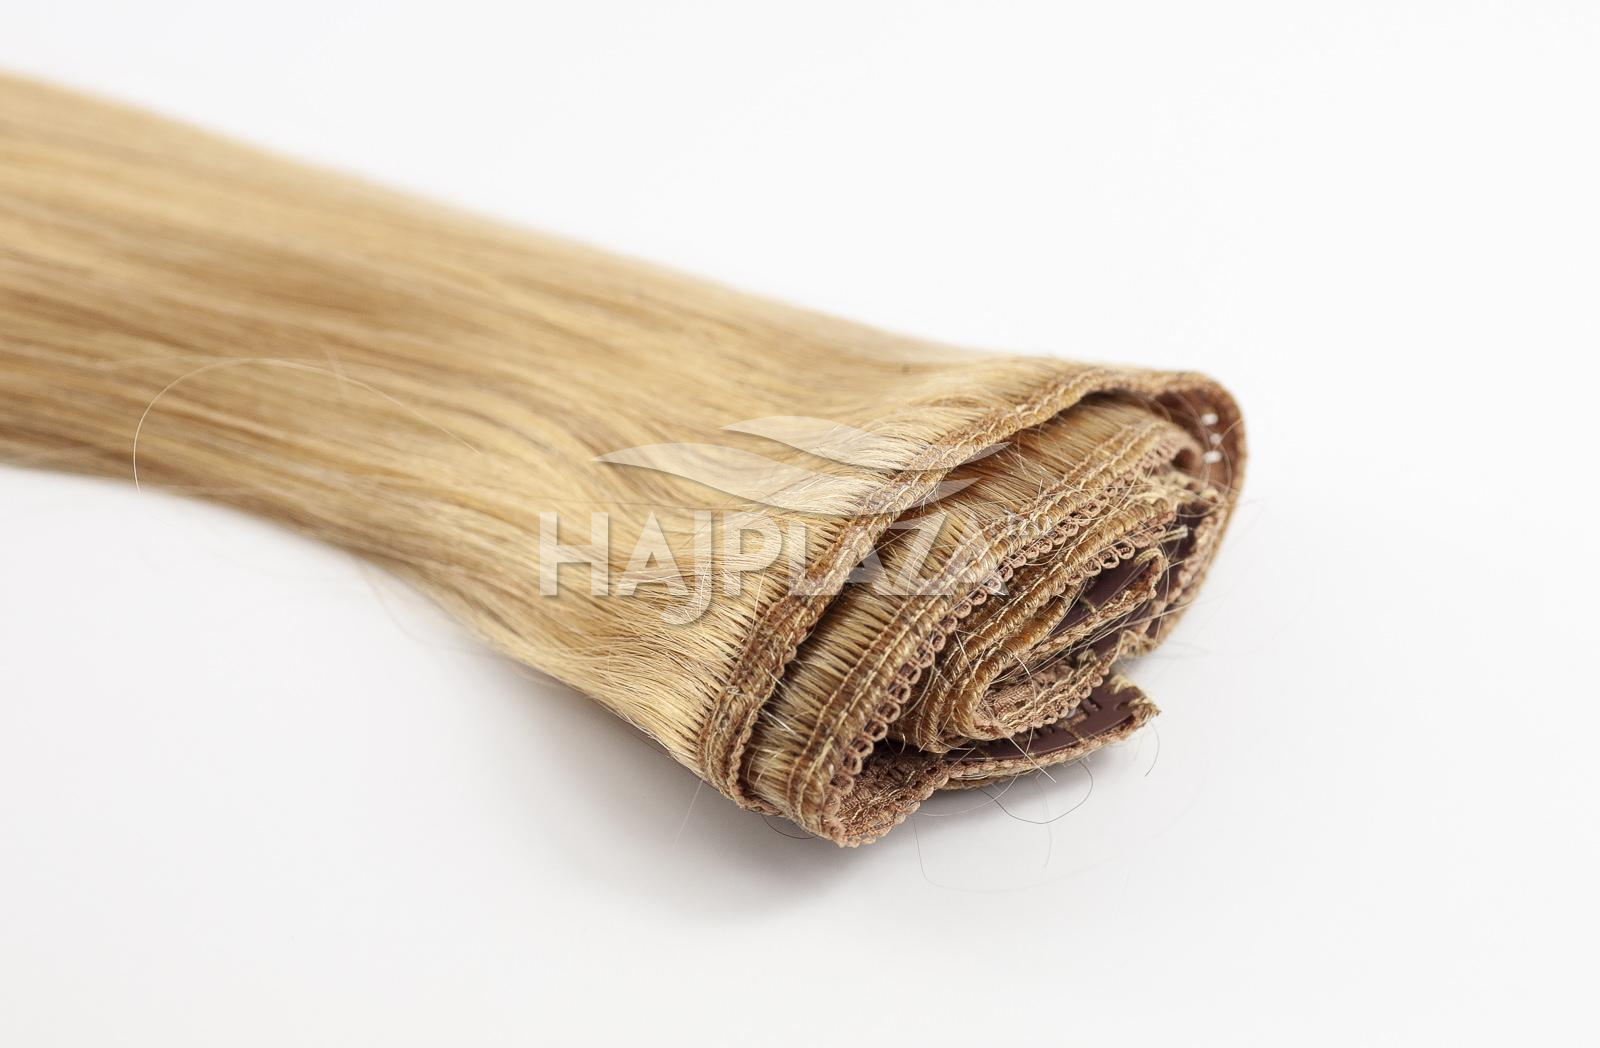  Festett középszőke  csatos haj - 60-65 cm